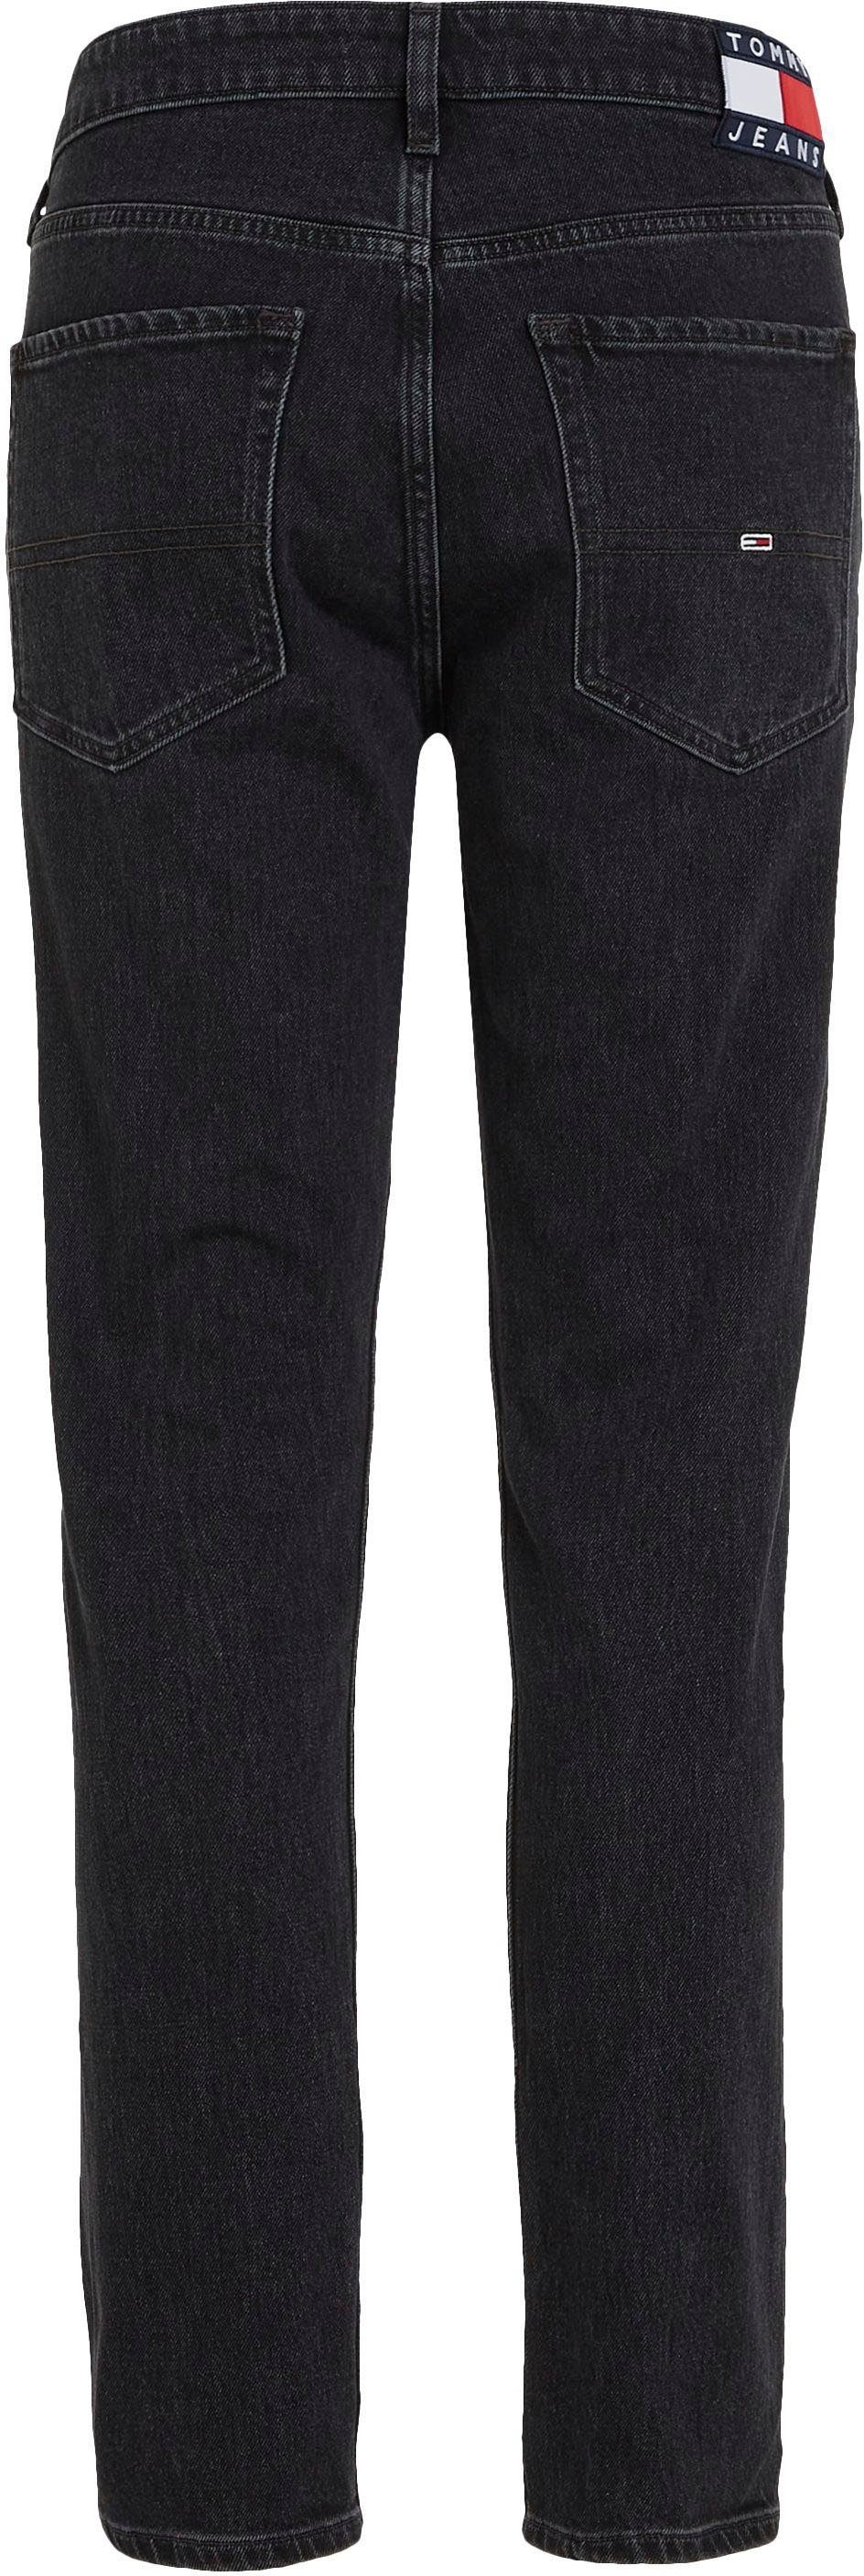 SLIM Denim Black 5-Pocket-Jeans SCANTON Tommy Jeans Y